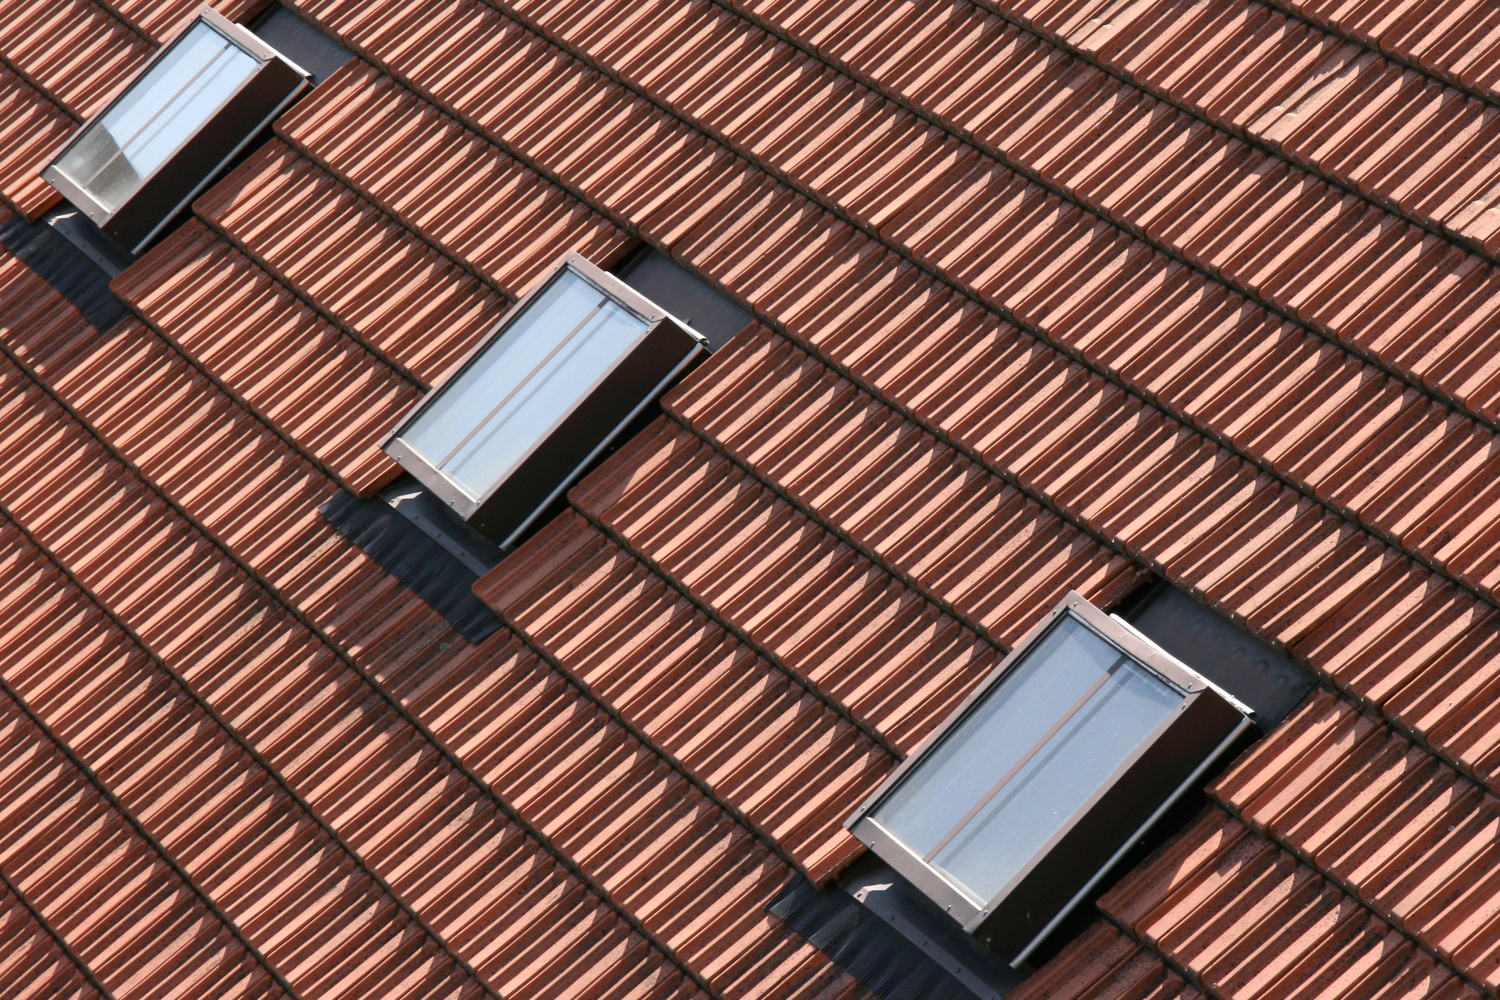 Střešní okna Solara KLASIK dodržují malý formát předepsaný památkovými úřady